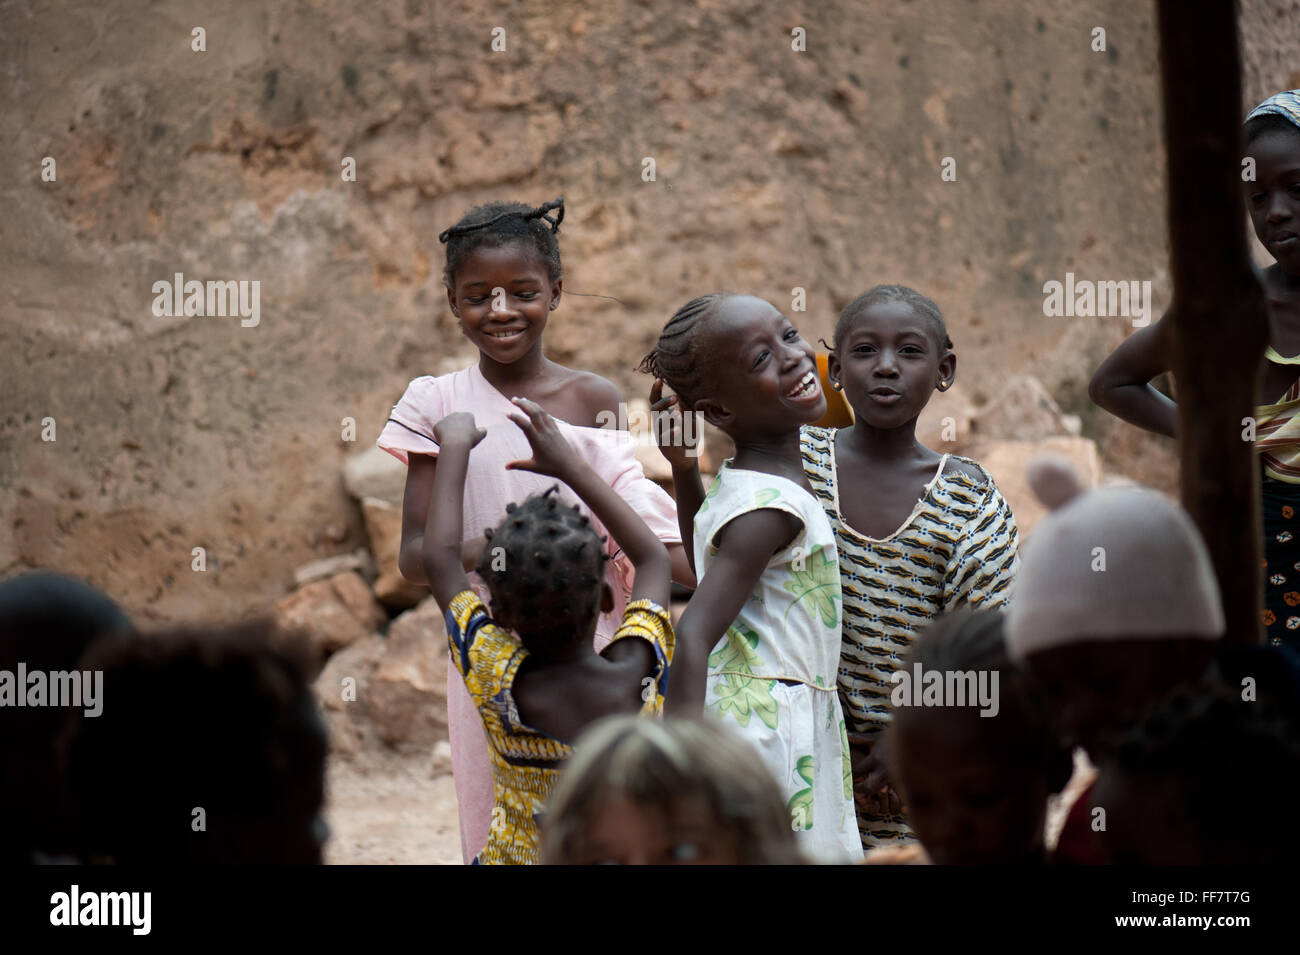 Mali, Afrique - Groupe d'enfants noirs s'amusant en Afrique Banque D'Images